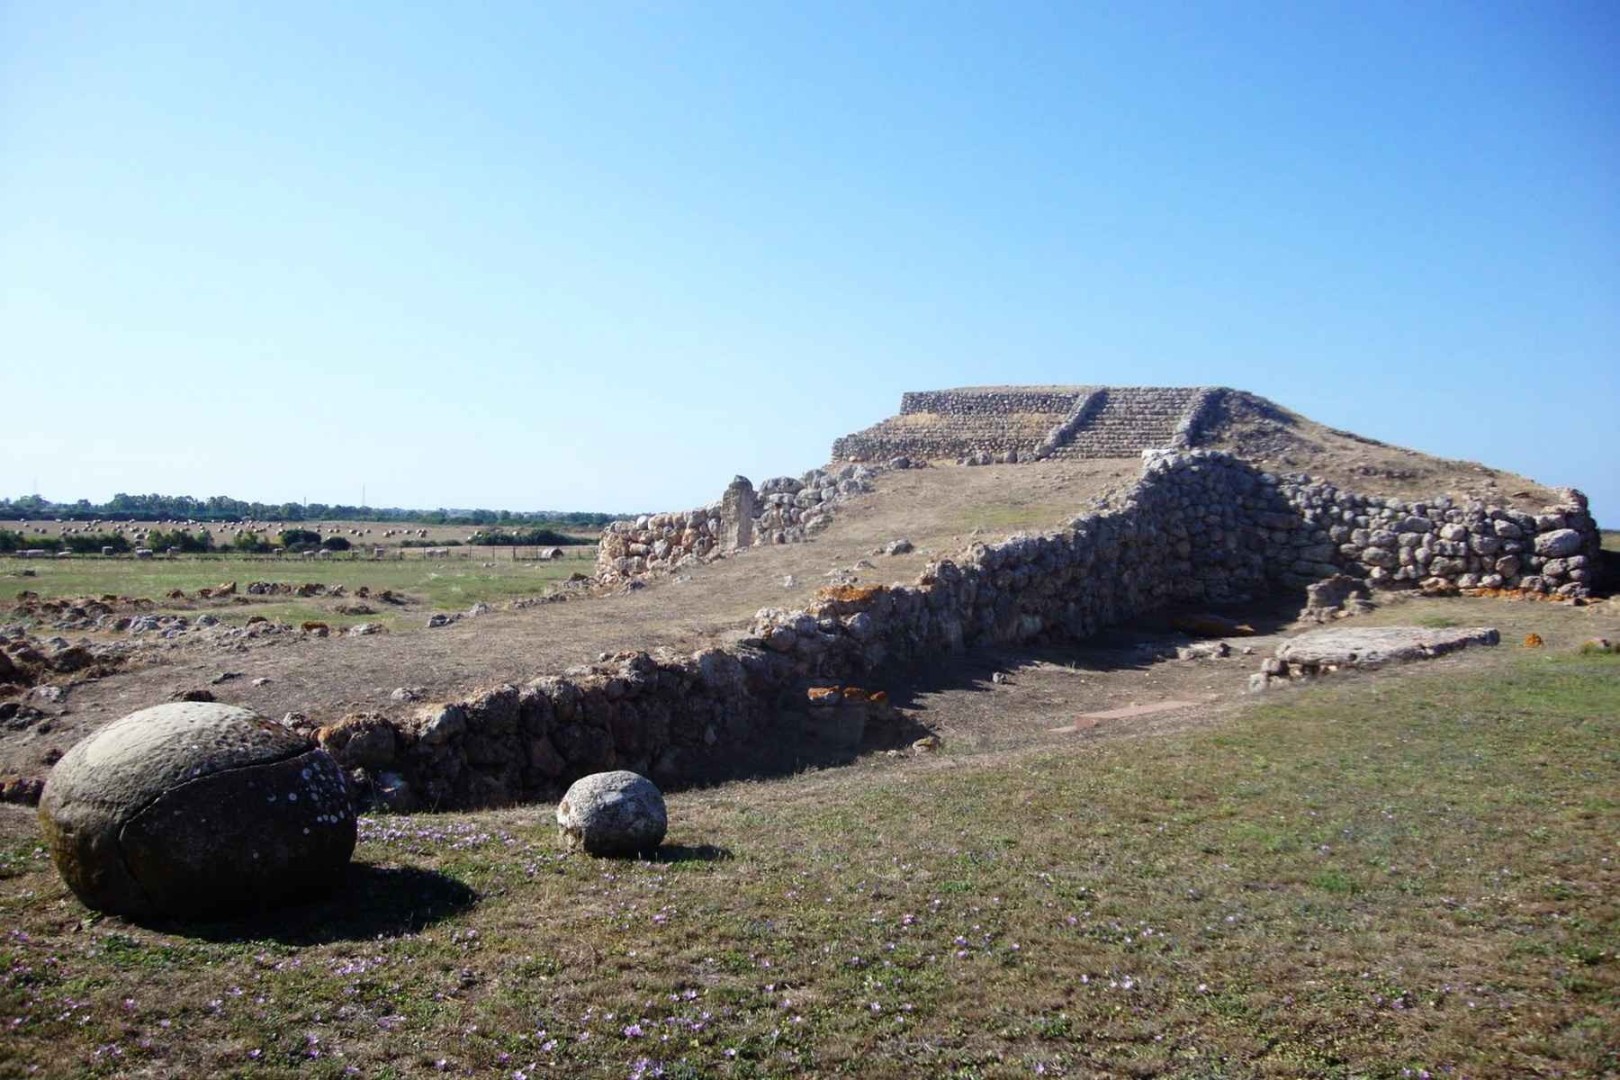 Таинственный сардинский зиккурат в Монте д’Аккодди (Monte d’Accoddi), мегалитическое святилище IV тысячелетия до н.э.